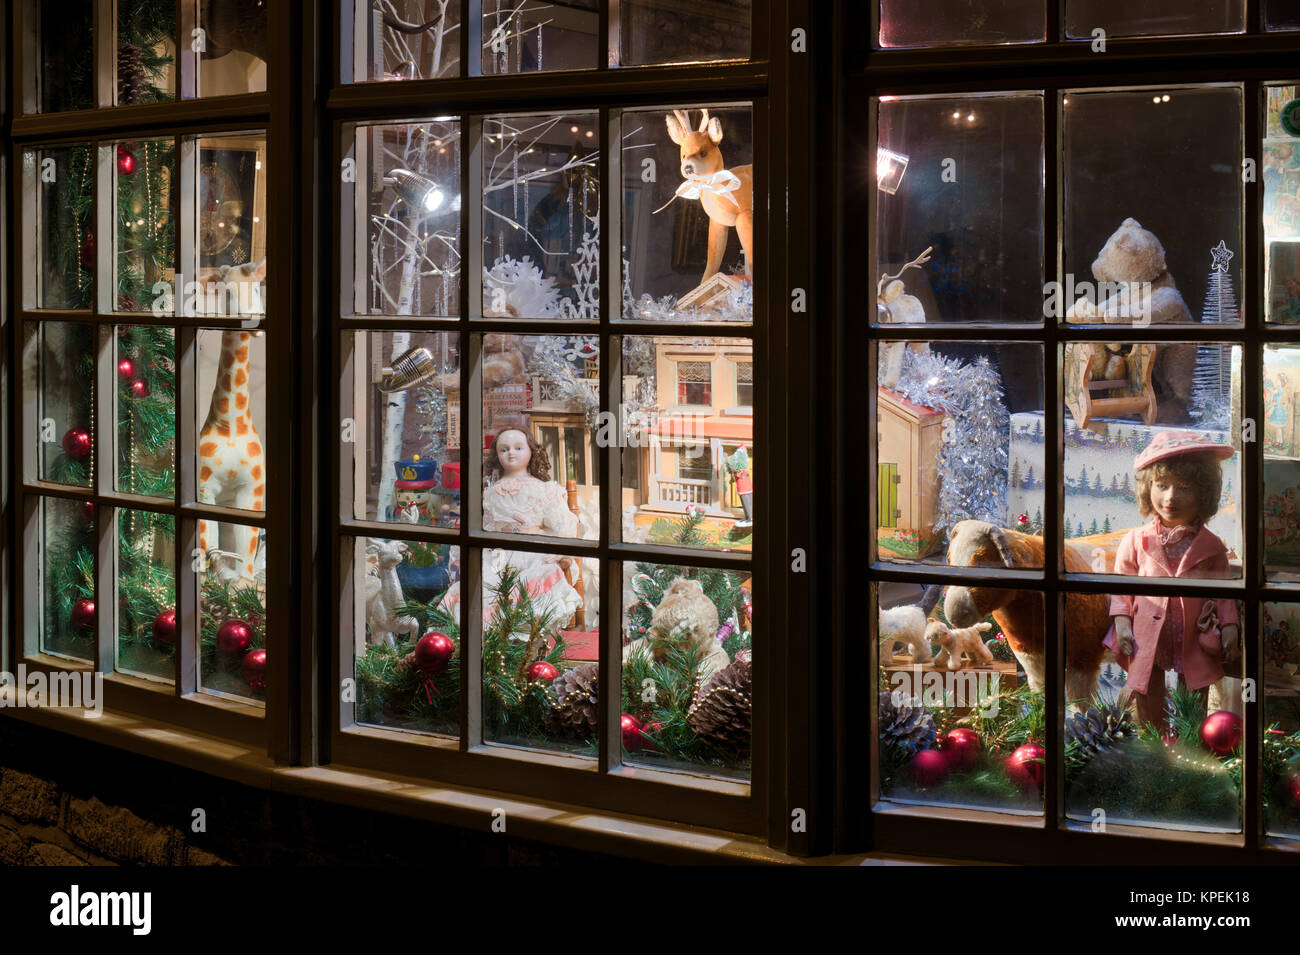 Durham house Antiquitäten center Weihnachten shop Fenster in der Nacht. Verstauen auf der Wold, Cotswolds, Gloucestershire, England Stockfoto